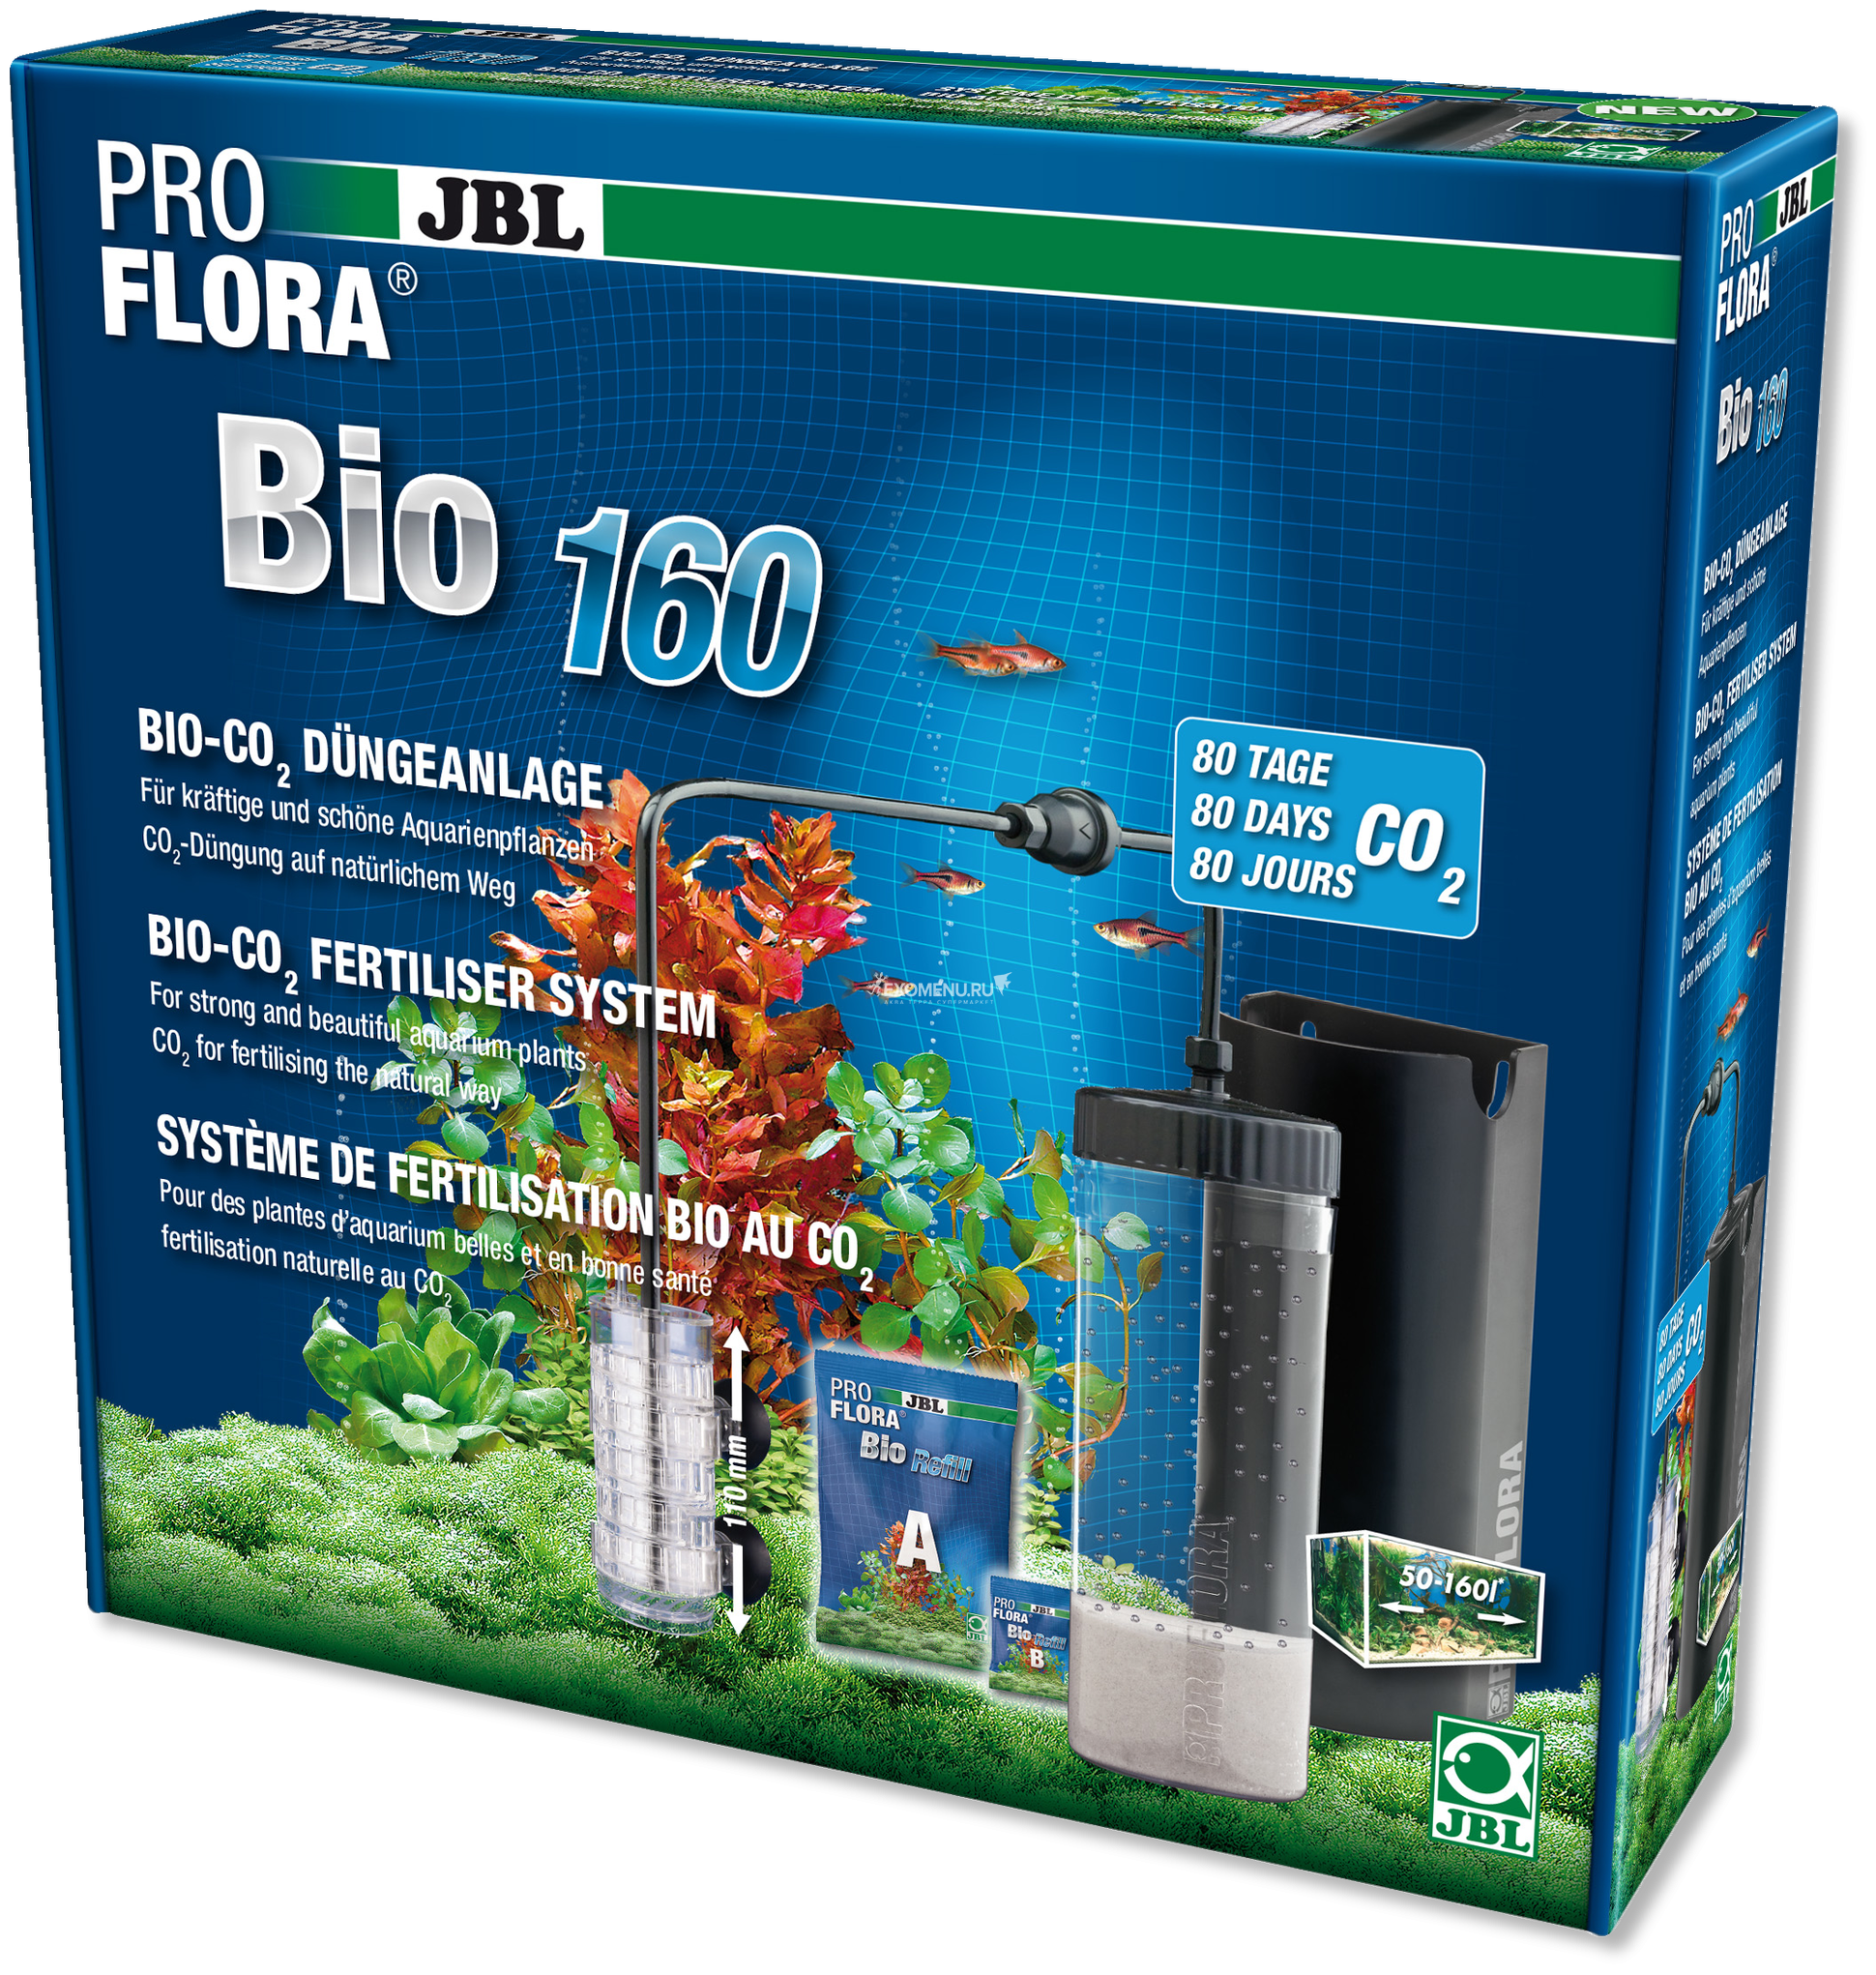 JBL ProFlora bio160 2 - Bio-CO2 система с расширяемым диффузором для аквариумов 50-160 л